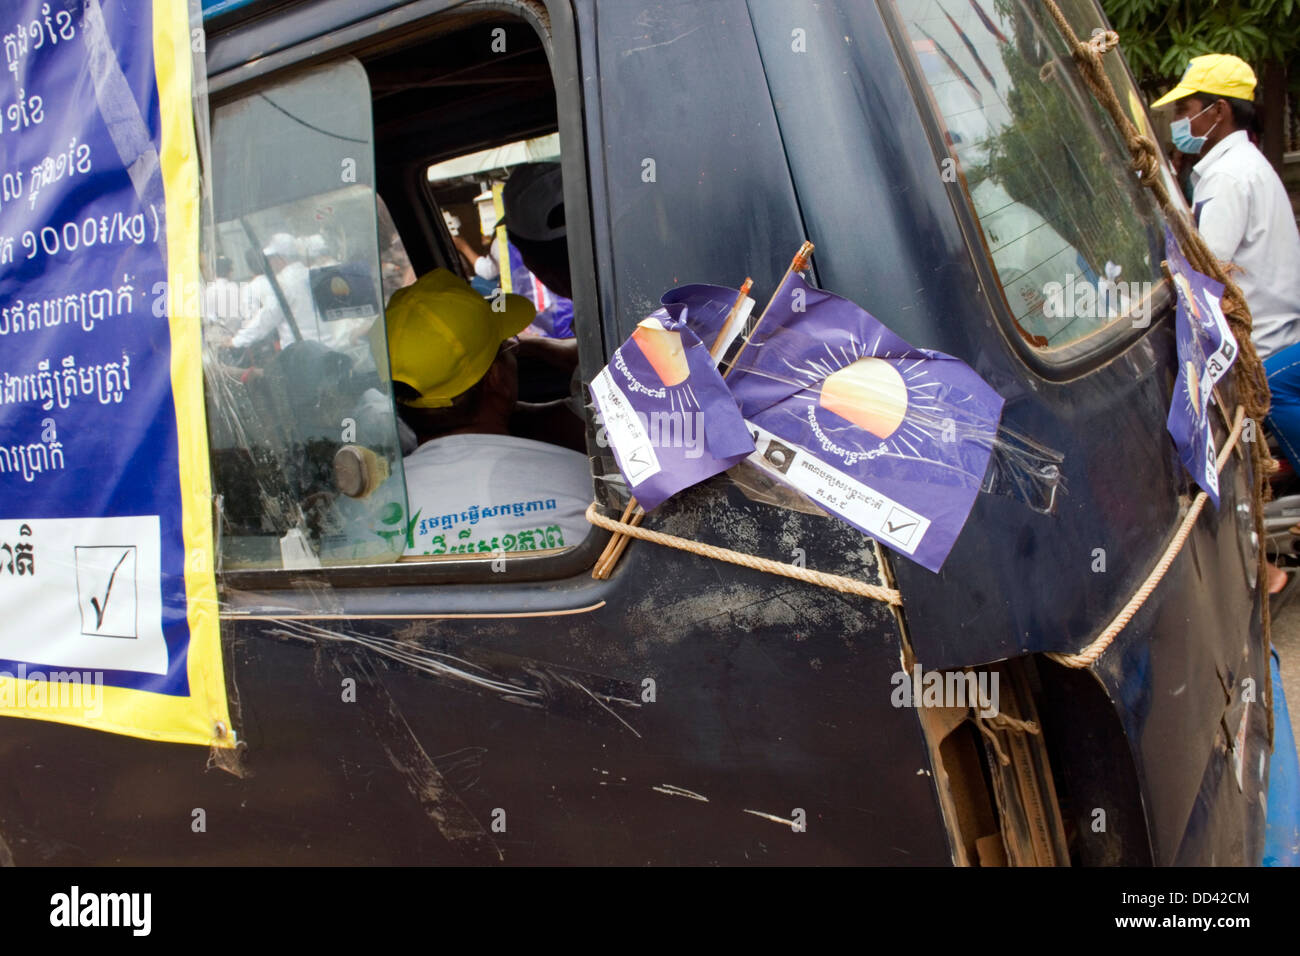 Ein alte verfallene van wird während einer Kundgebung der Kampagne für die gegnerischen CNRP unter der Leitung von Sam Rainsy in Kampong Cham, Kambodscha verwendet. Stockfoto